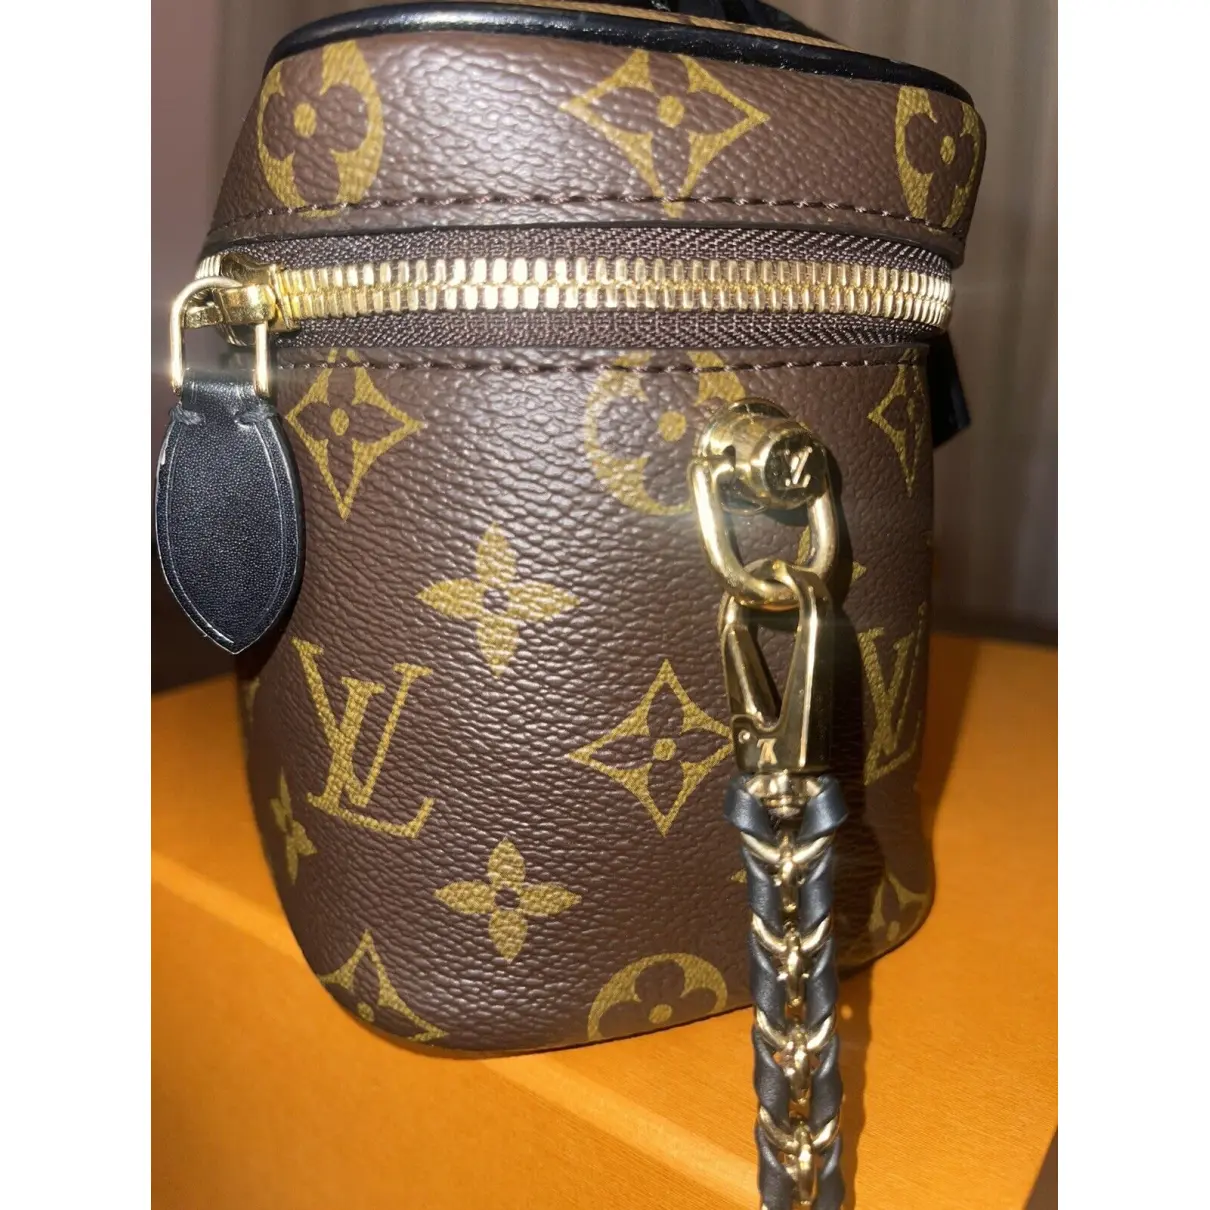 Buy Louis Vuitton Vanity leather handbag online